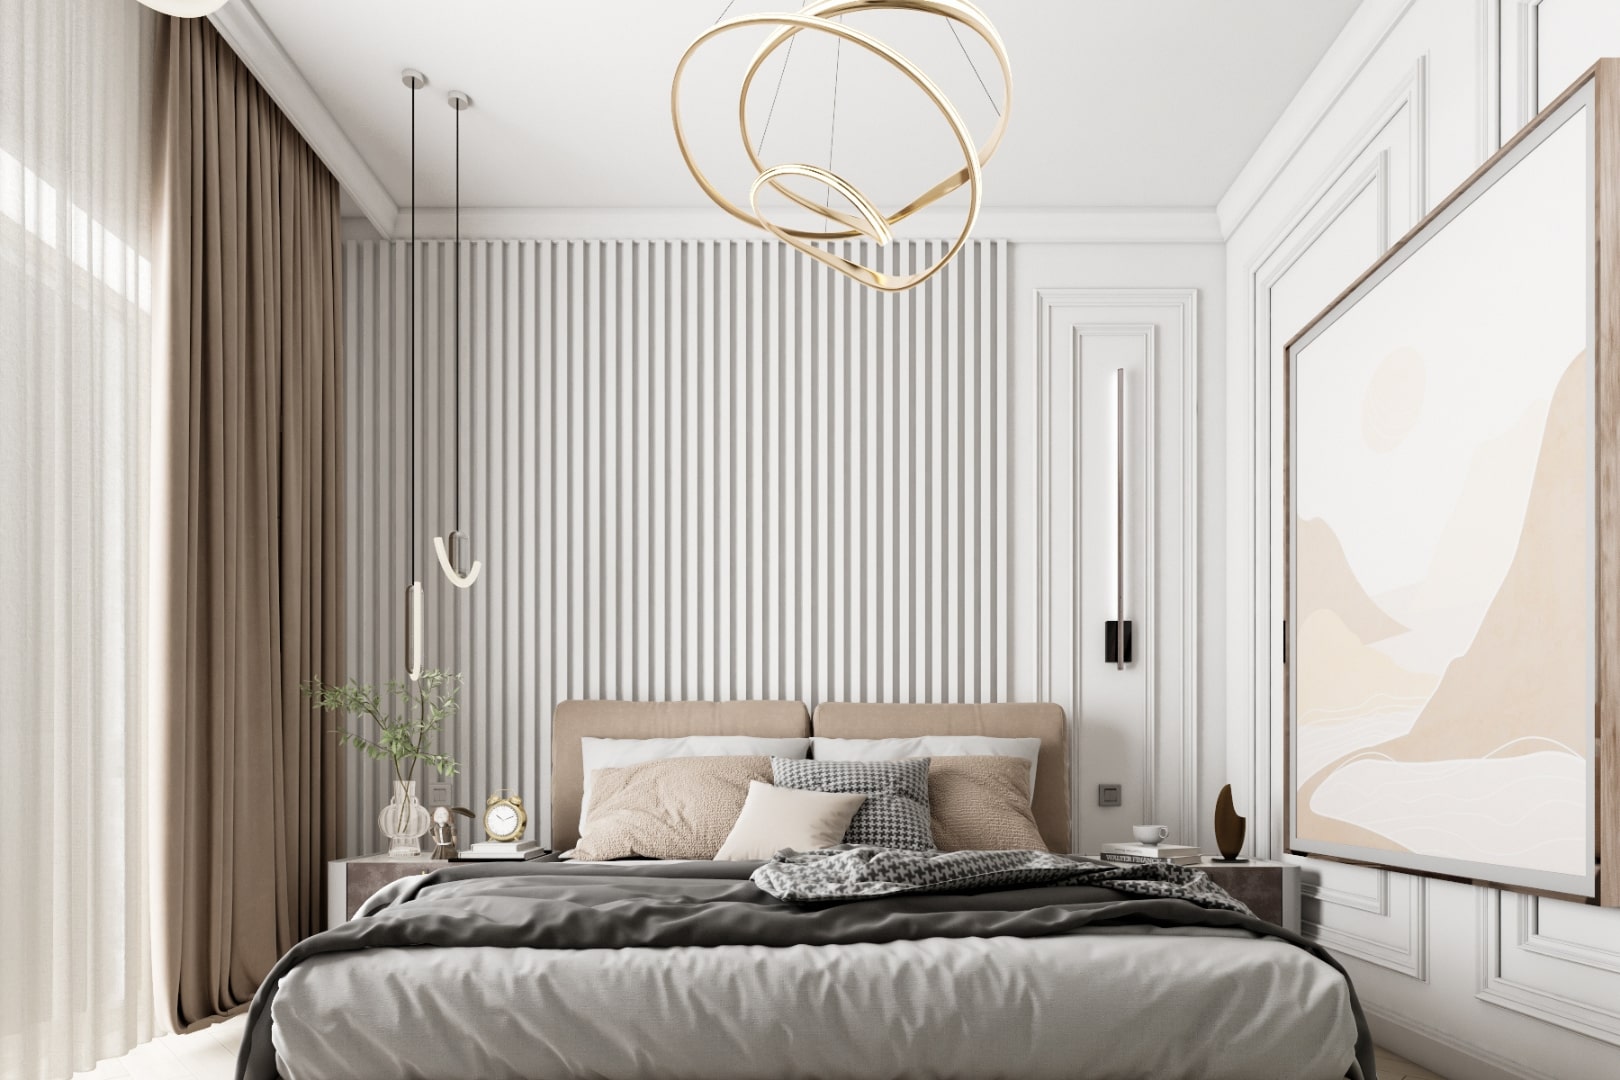 Dormitor amenajat in stil modern cu maro, bej, crem